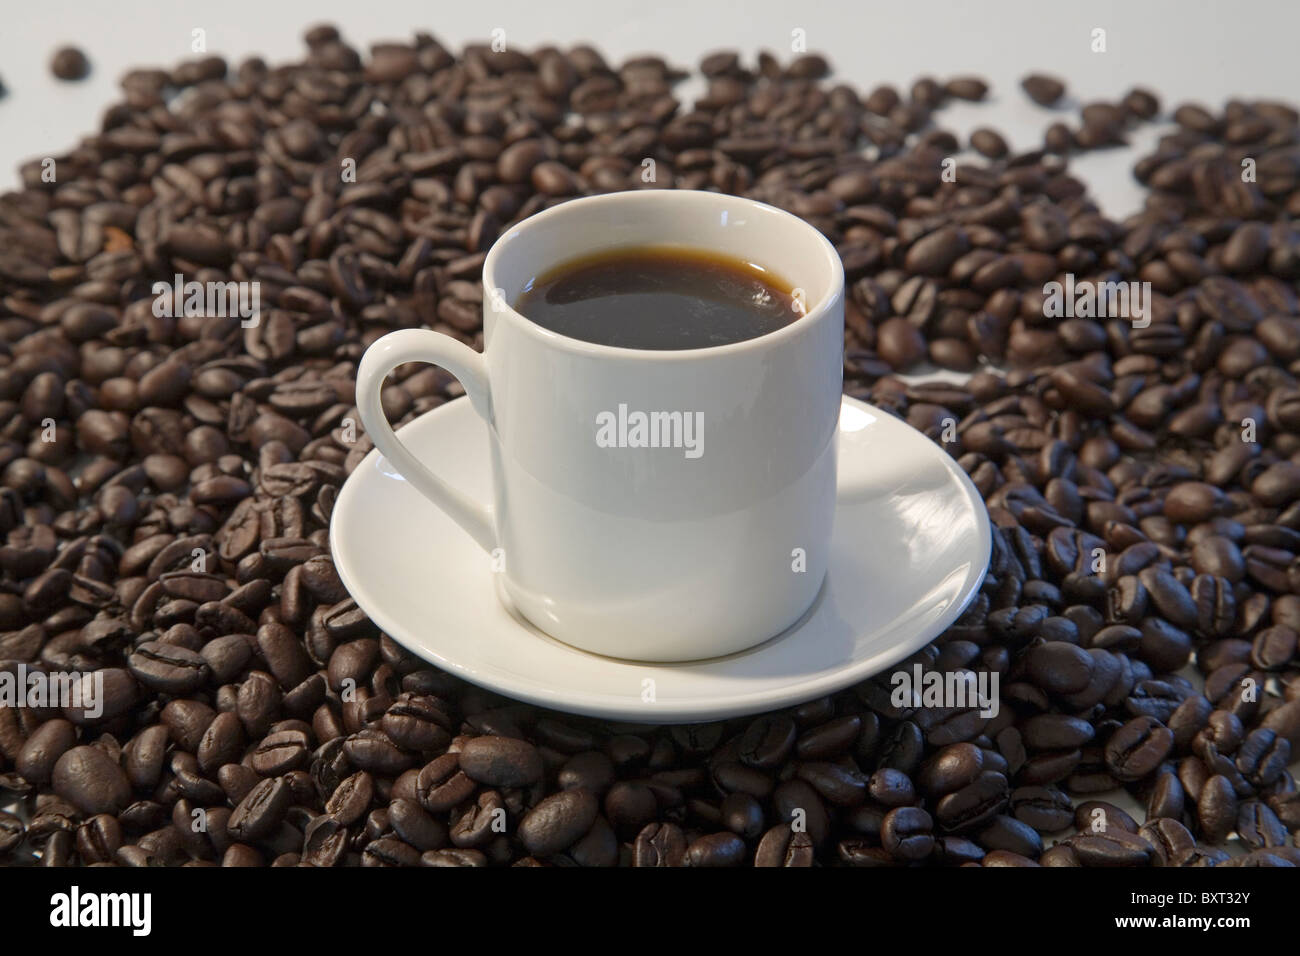 Una taza de café con granos de café expreso tostado oscuro Foto de stock